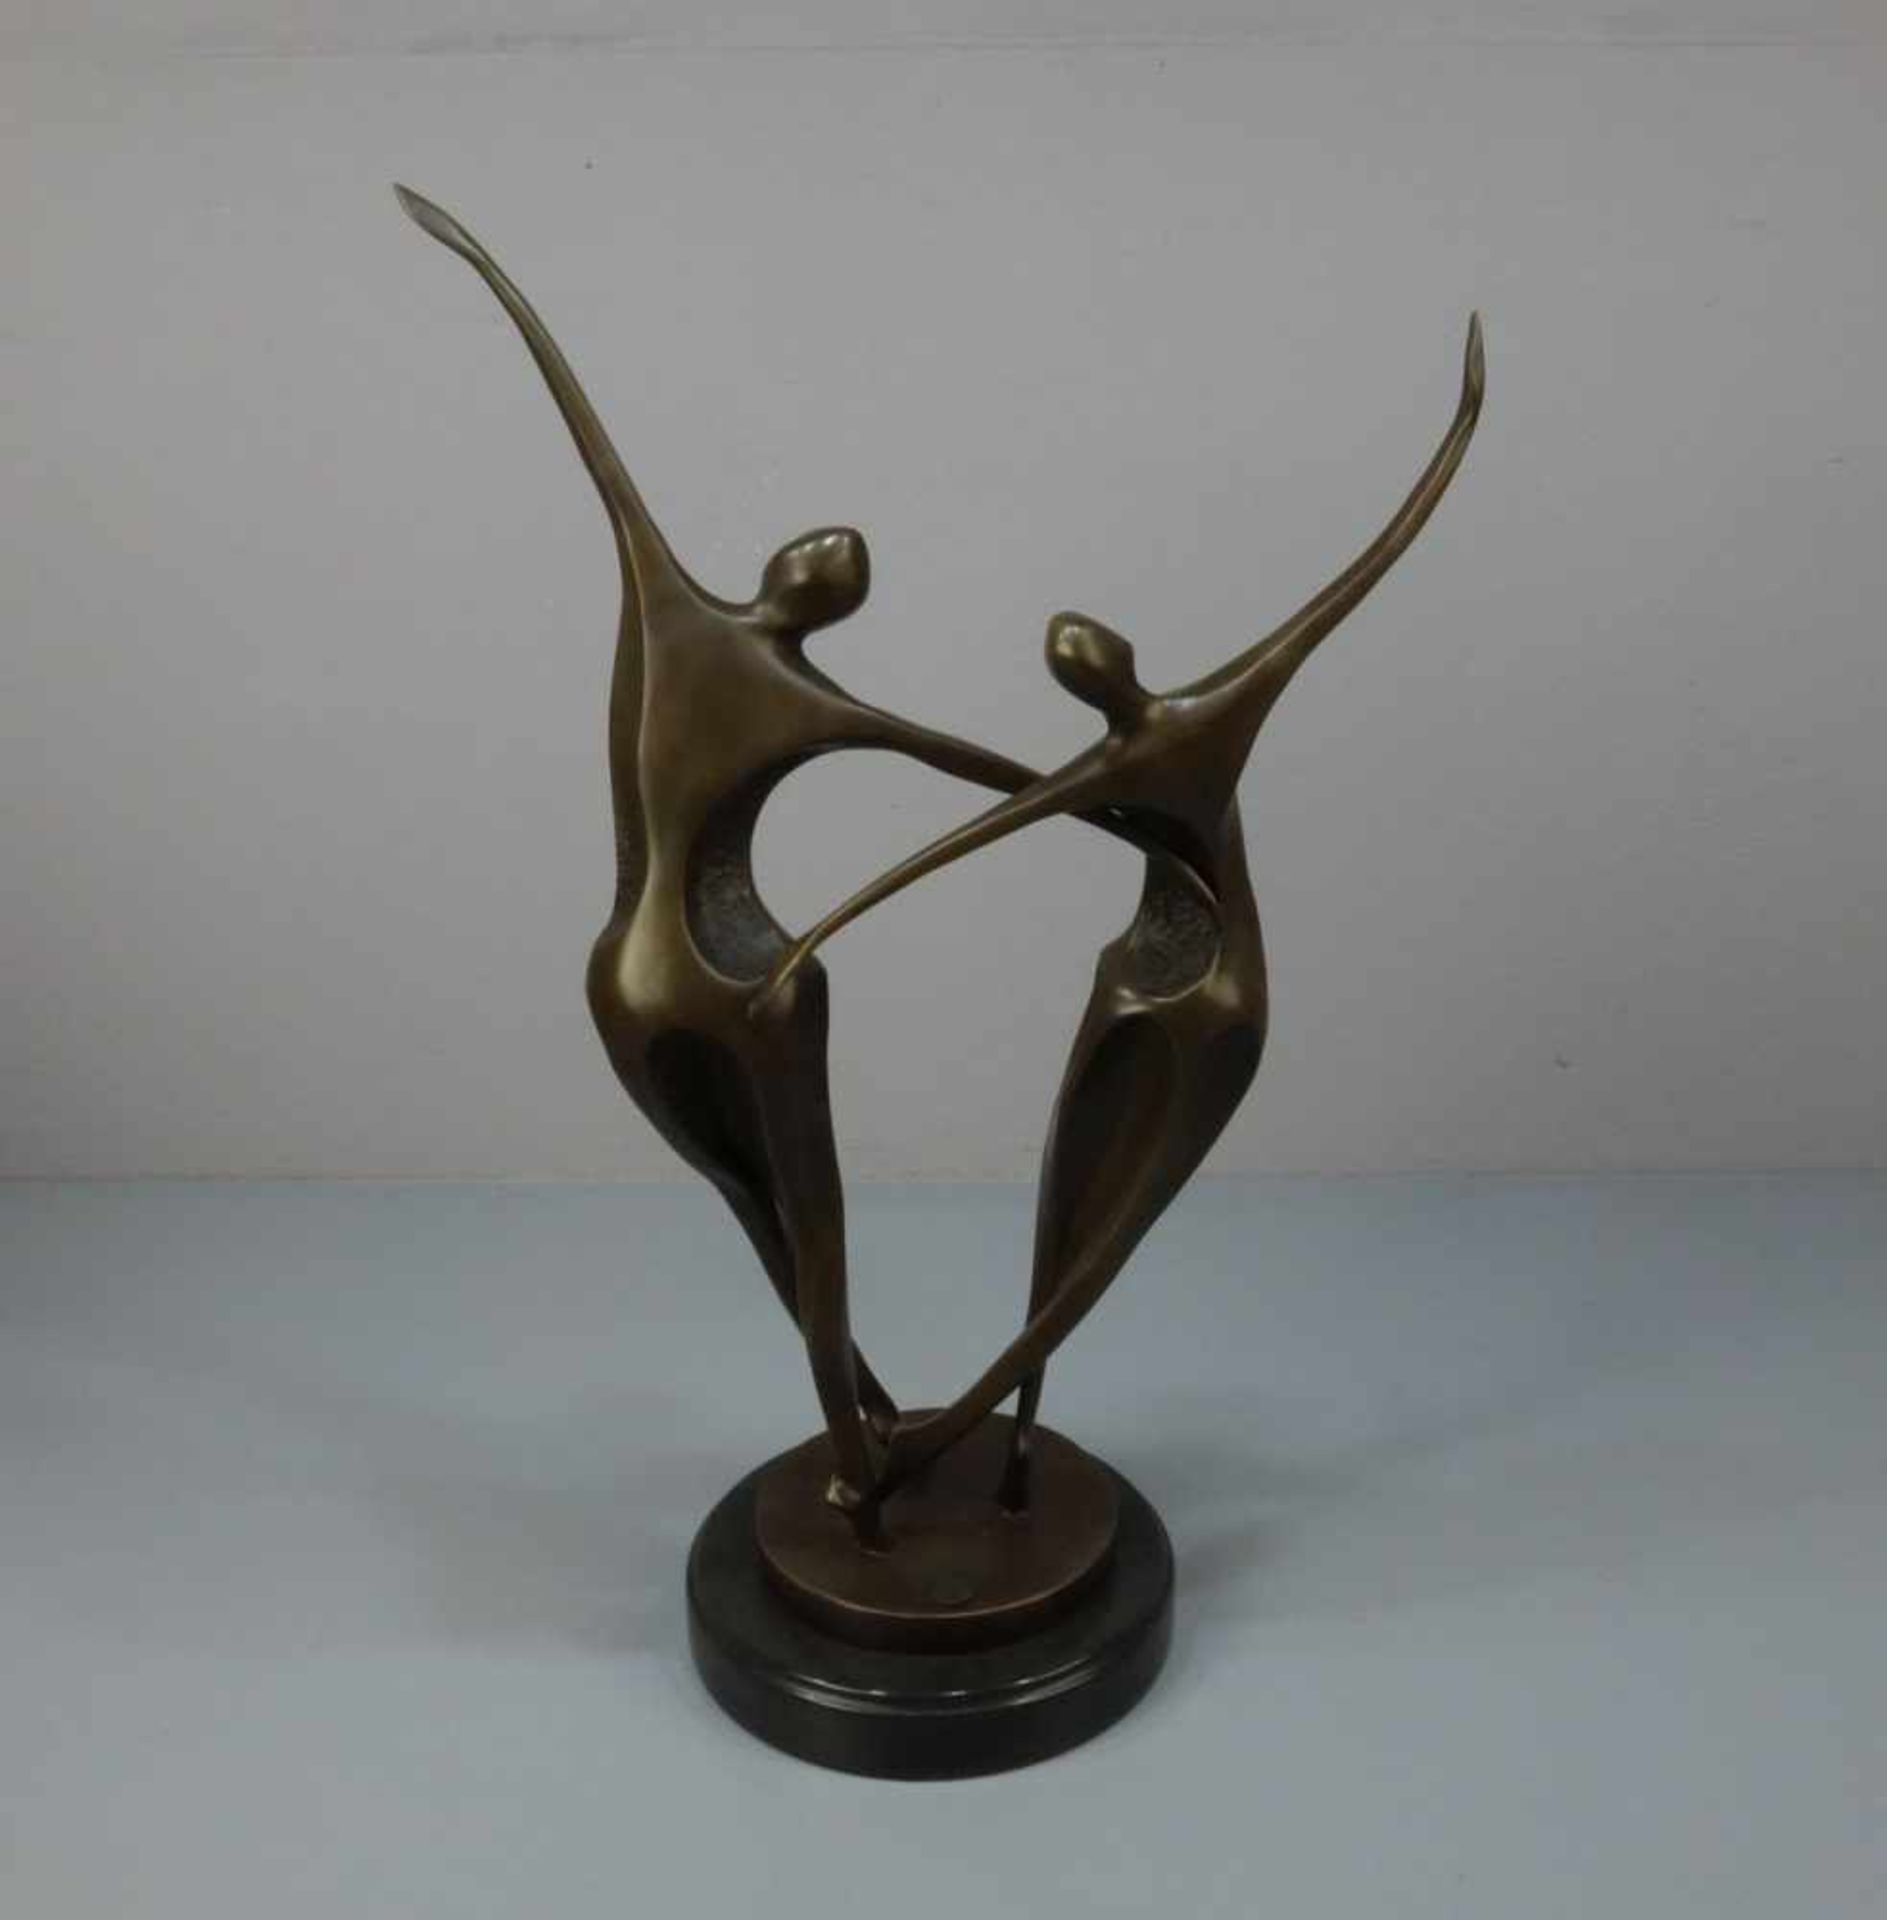 LOPEZ, MIGUEL FERNANDO (auch Milo, geb. 1955 in Lissabon), Skulptur / sculpture: "Tanzendes Paar", - Image 3 of 6